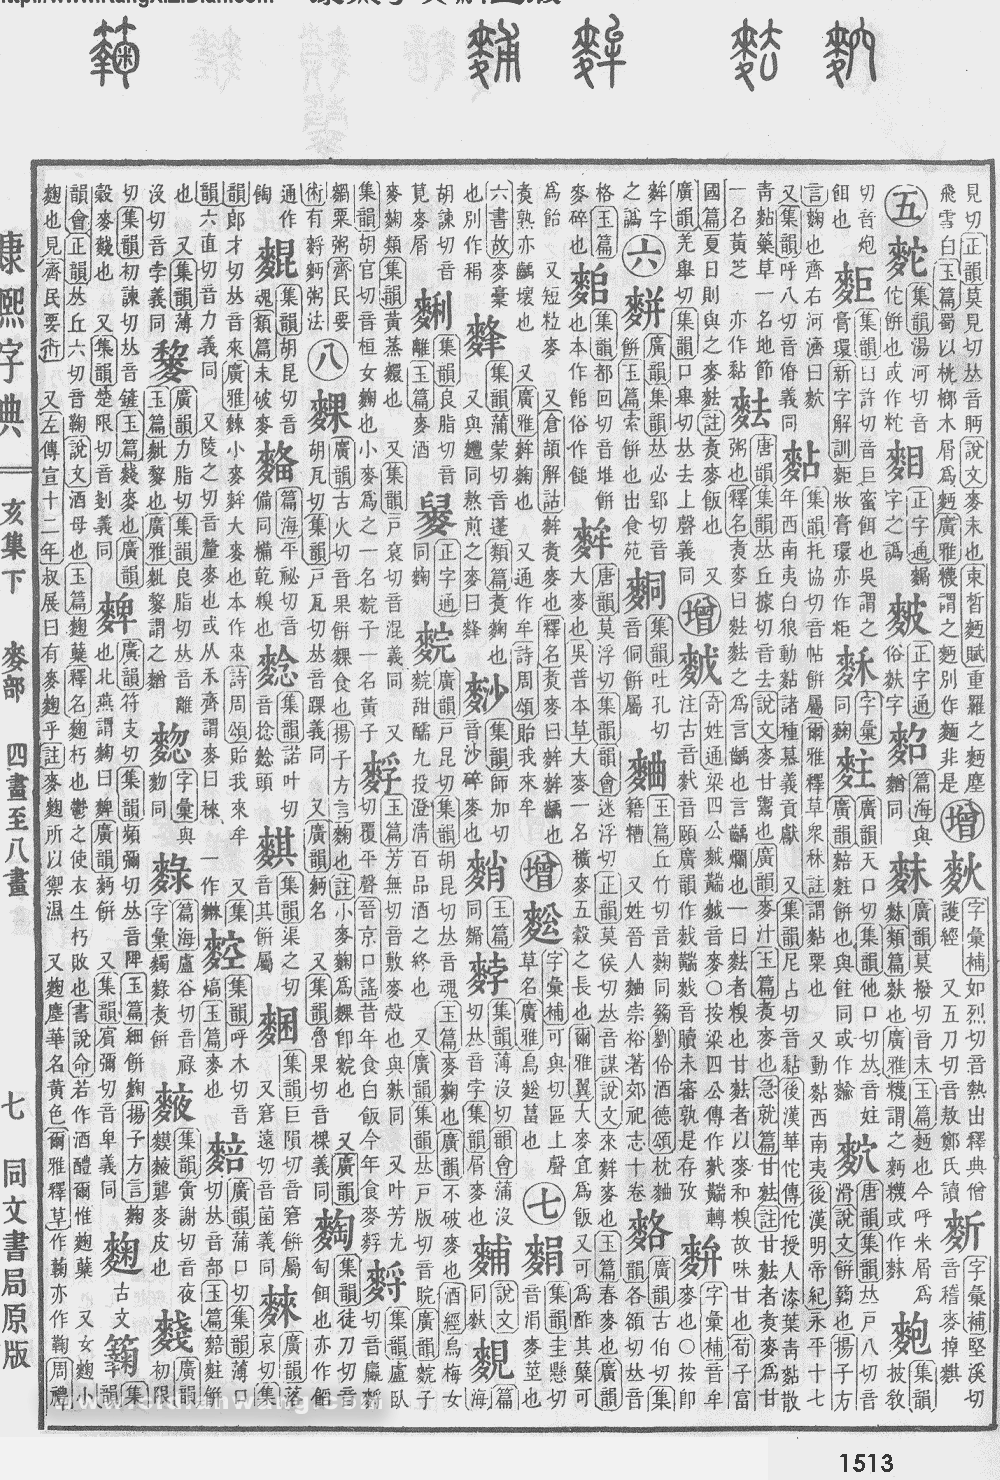 康熙字典掃描版第1513頁